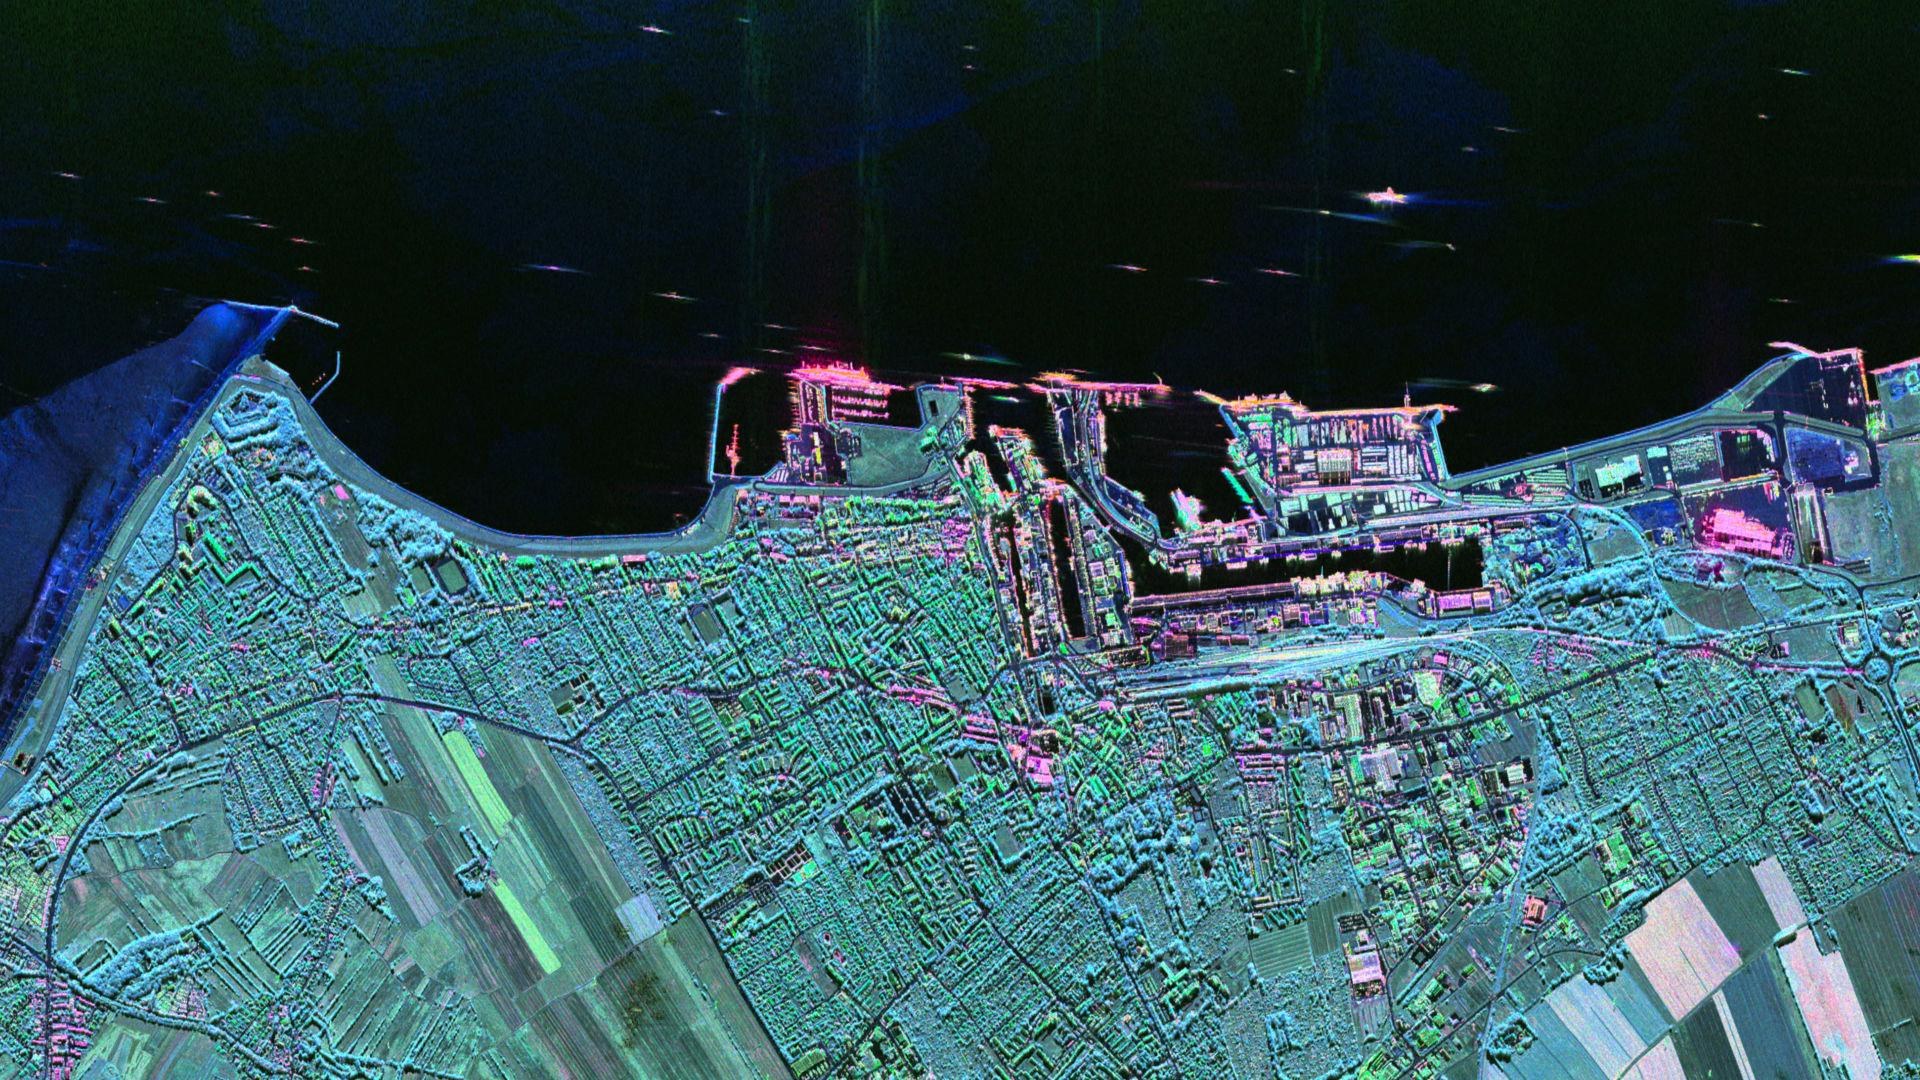 Radarbild von Cuxhaven